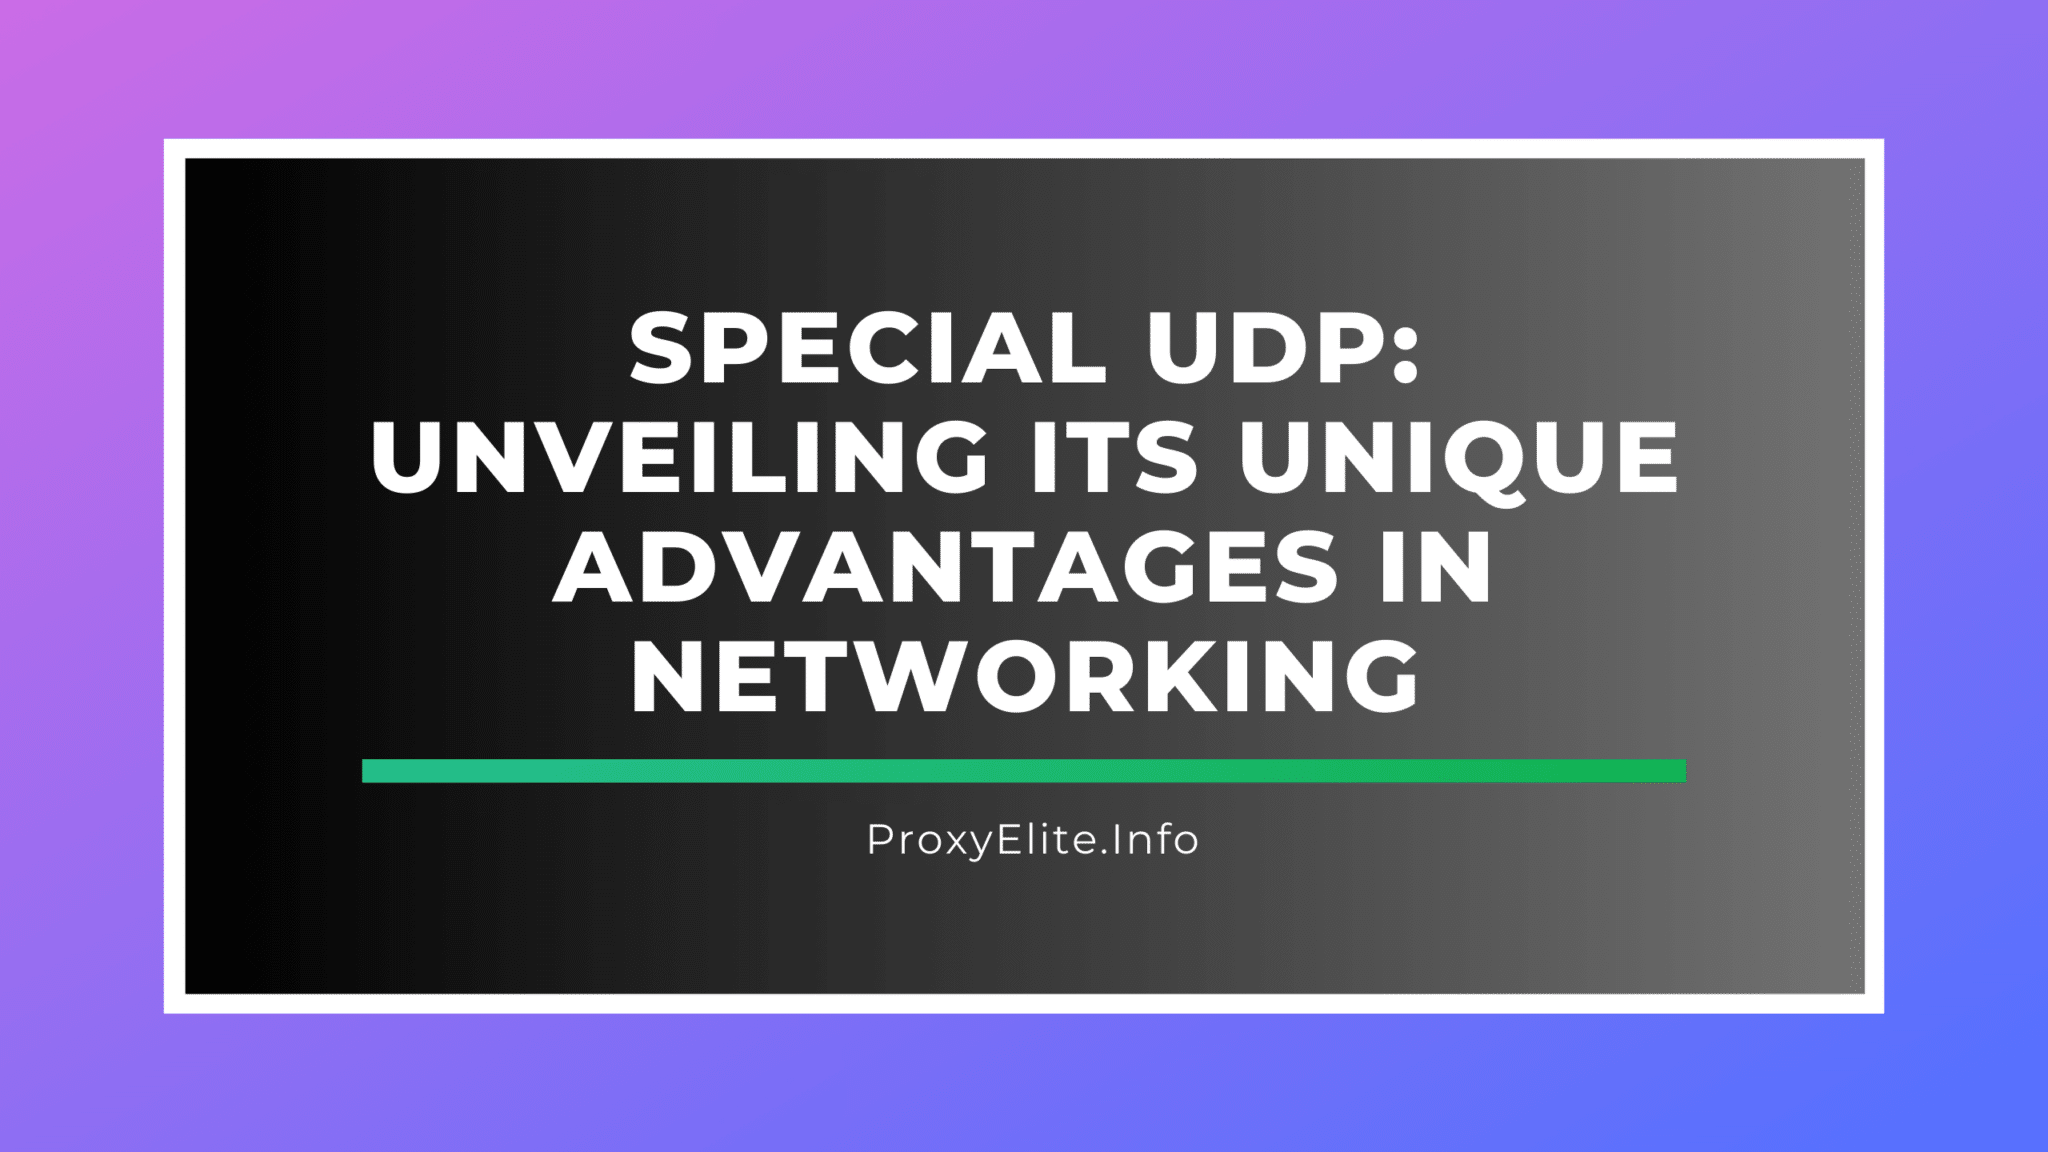 特殊UDP：展现其独特的组网优势